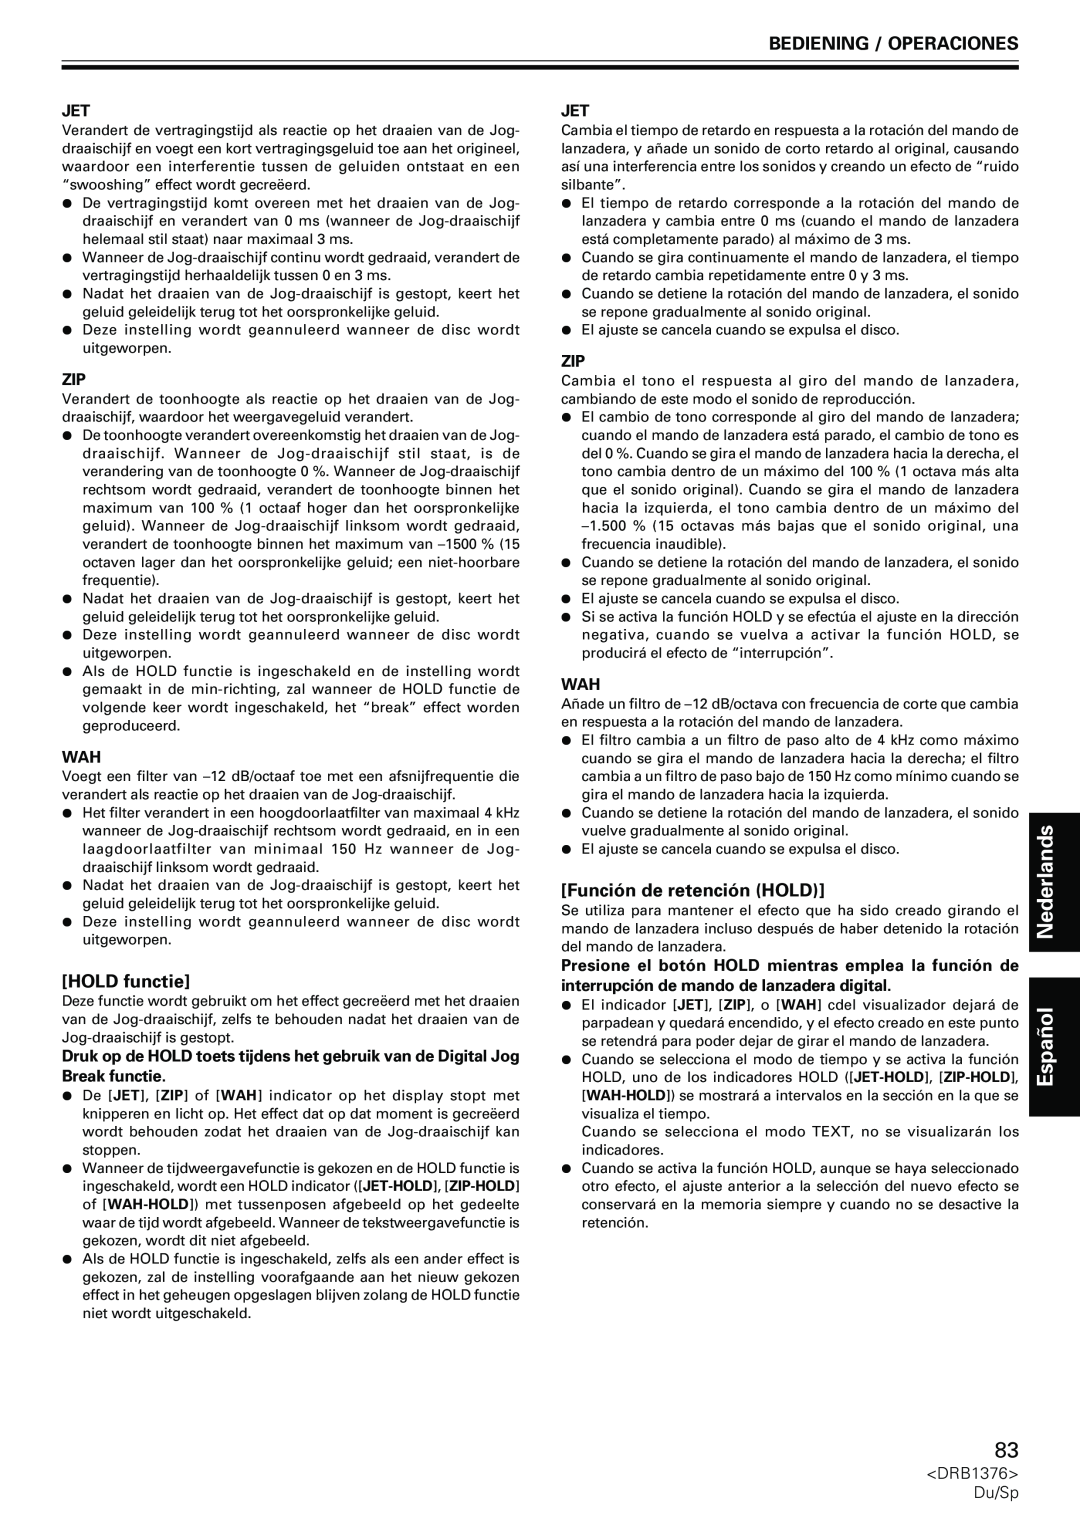 Pioneer CDJ-200 manual Función de retención HOLD, HOLD functie, Nederlands, Español, Bediening / Operaciones 